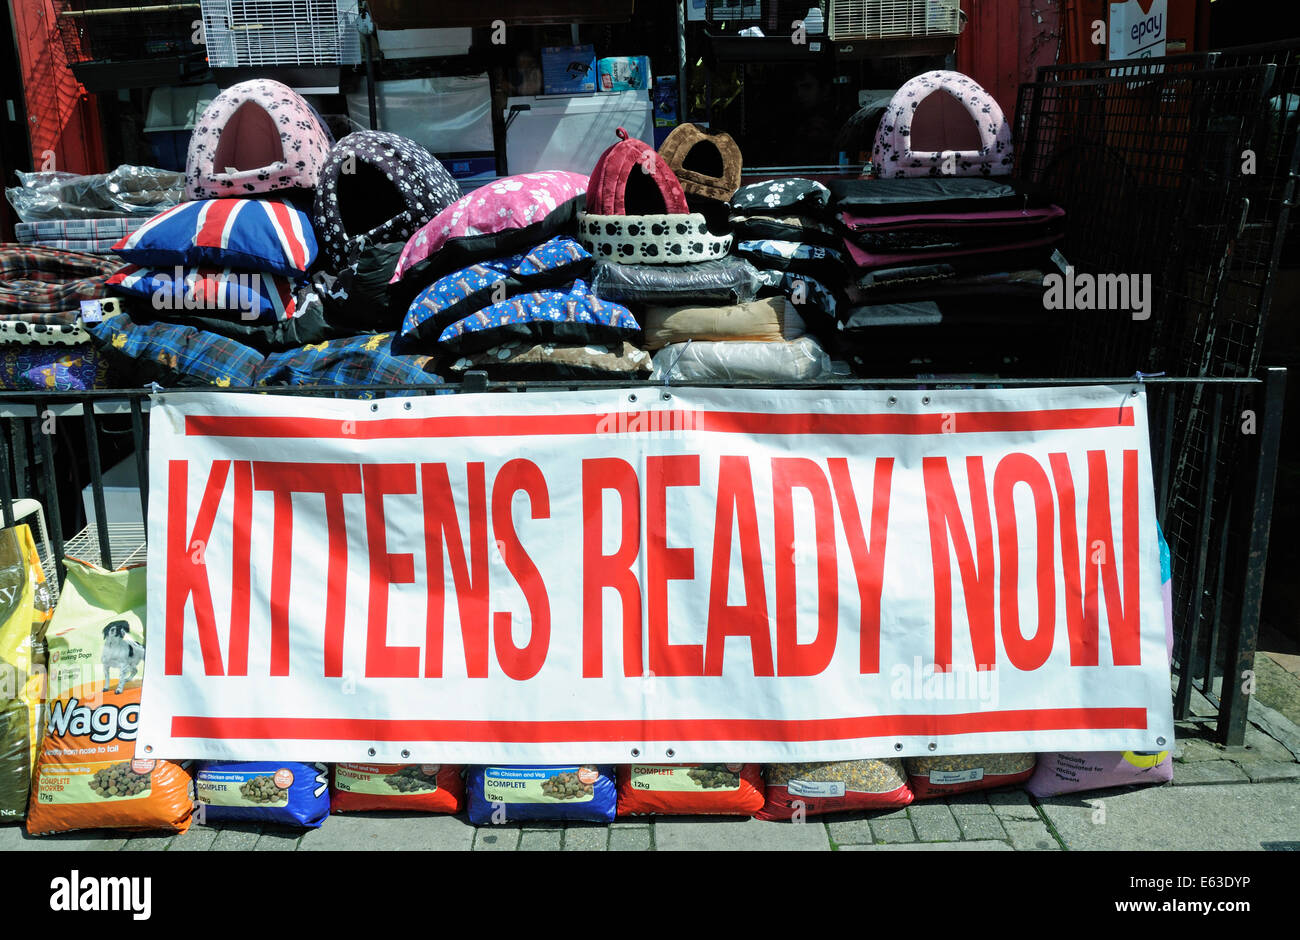 Kätzchen bereit jetzt Banner Schild draußen verwöhnen Haustiere Haustier Shop auf hatten Road, London Borough of Islington, England Großbritannien UK Stockfoto